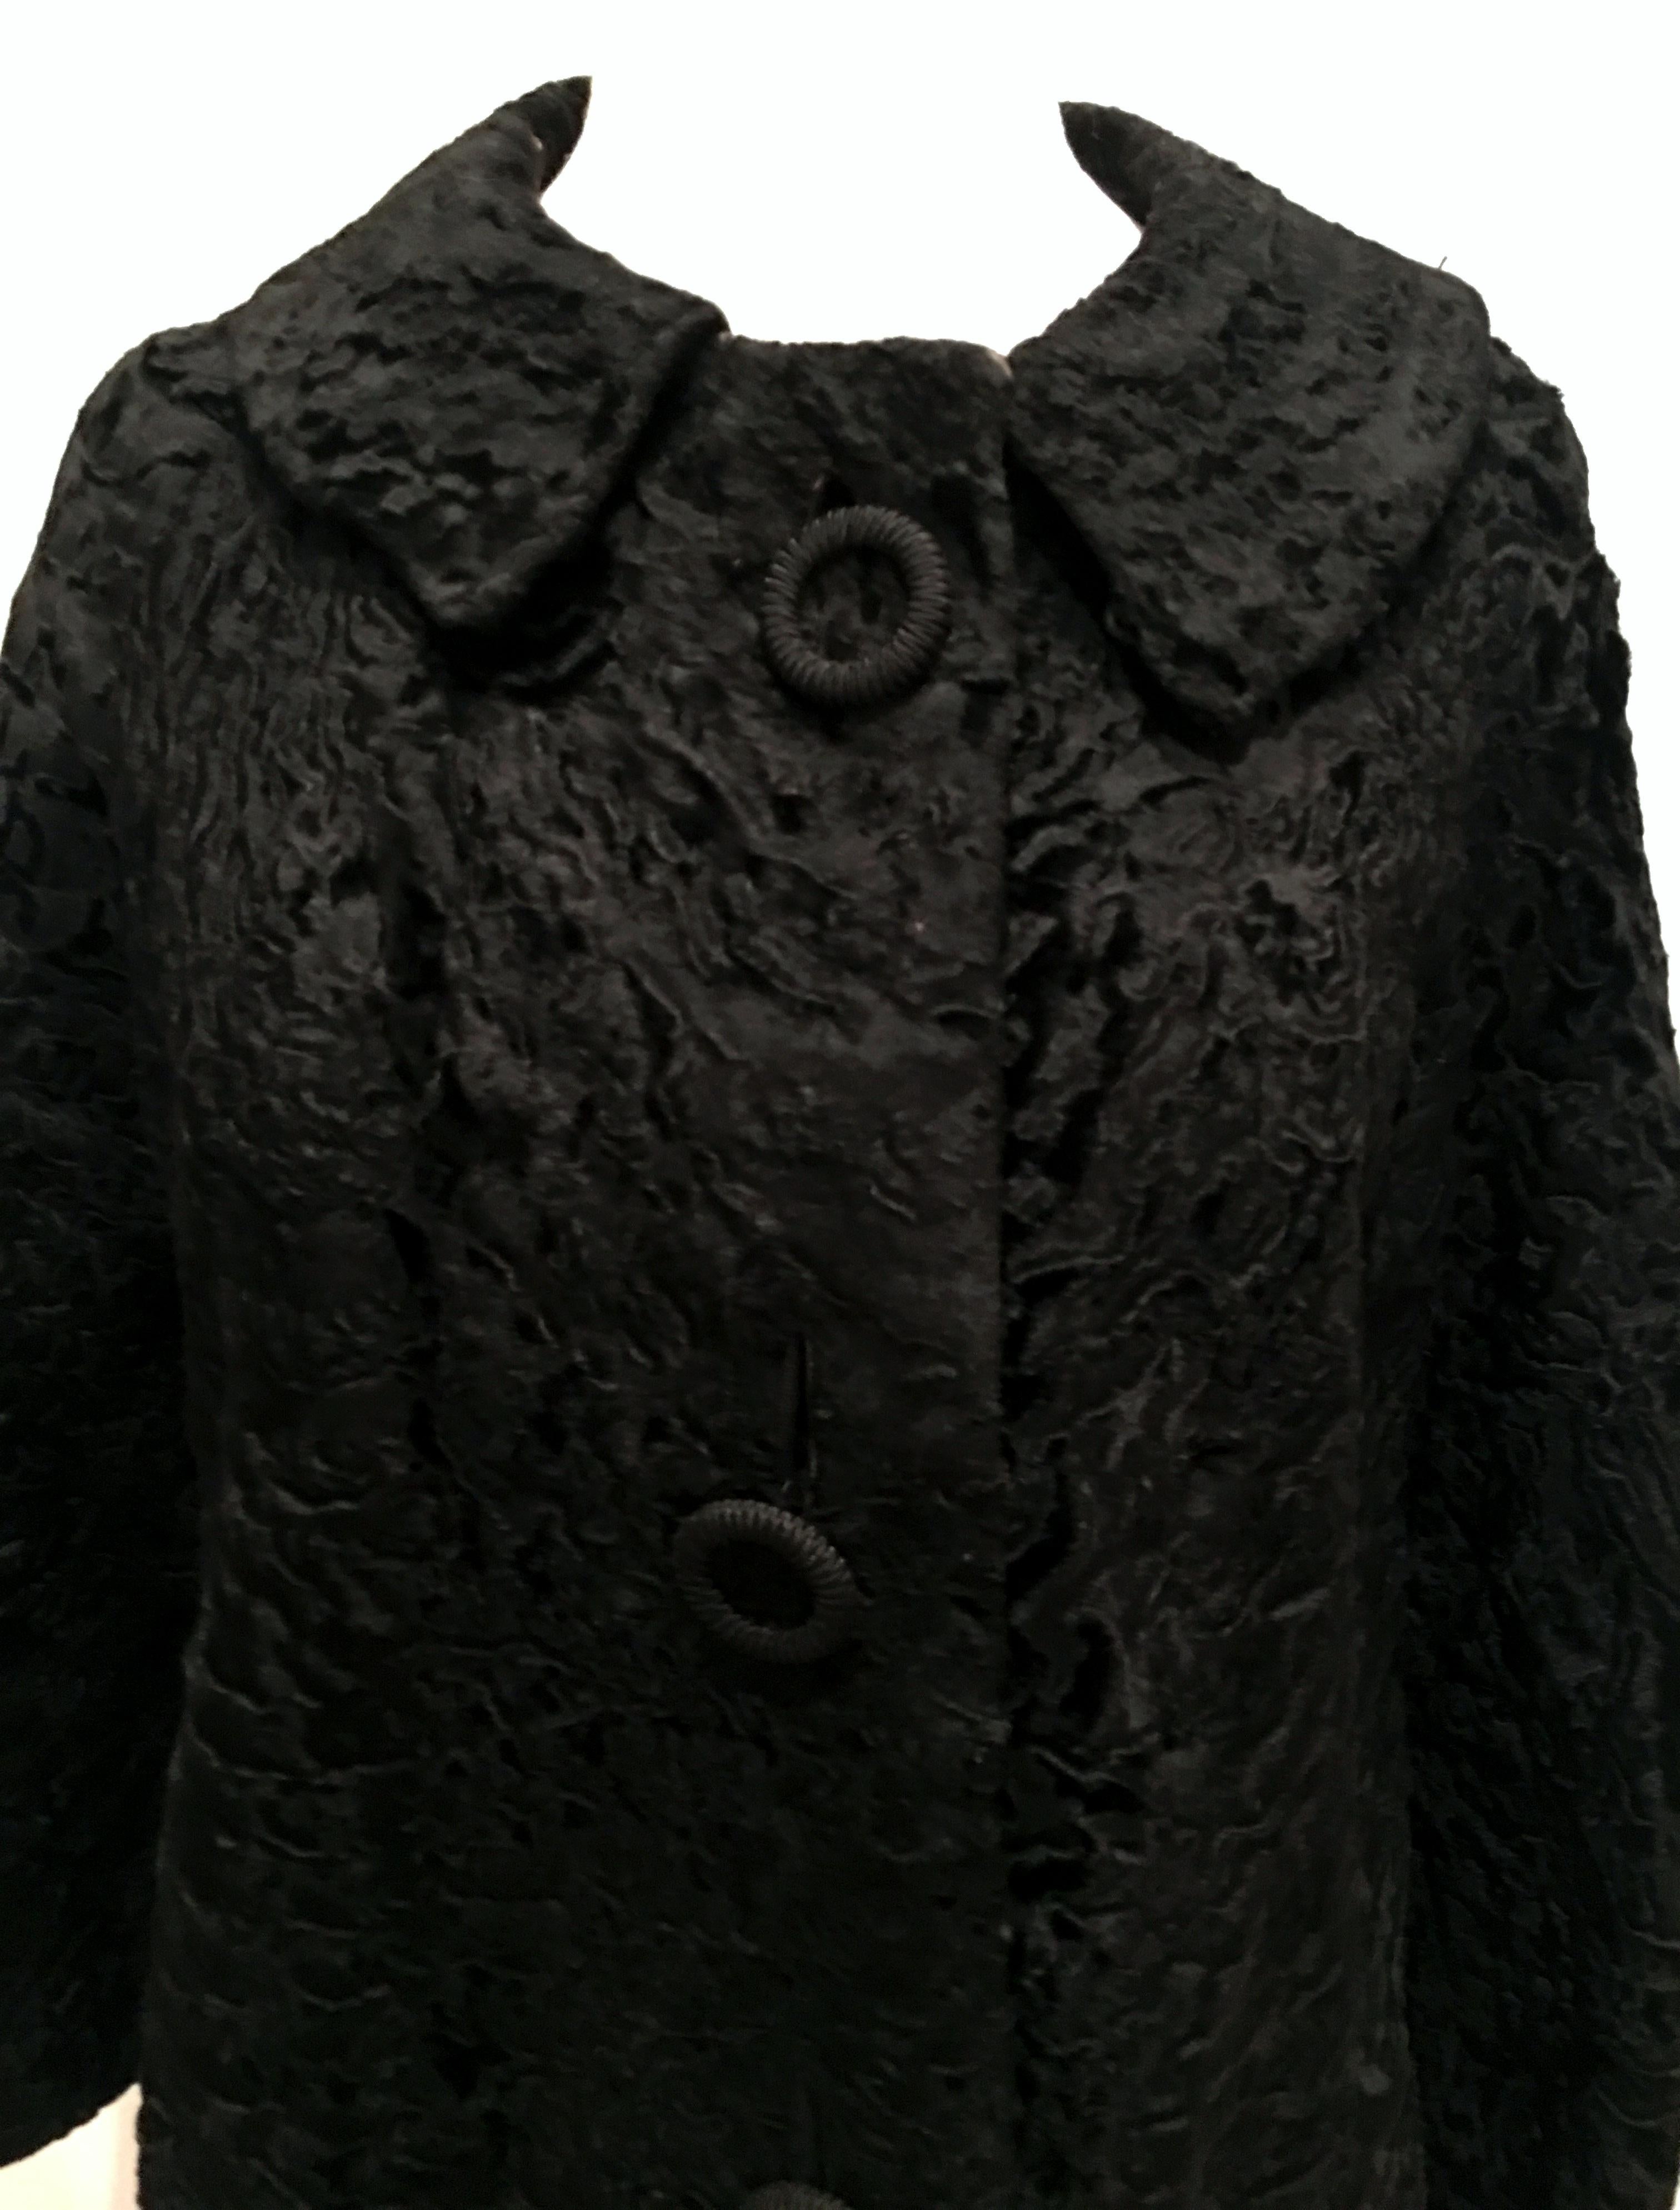 20th Century Sculptural Persian Jet Black Lamb Fur Swing Car Coat For Sale 2